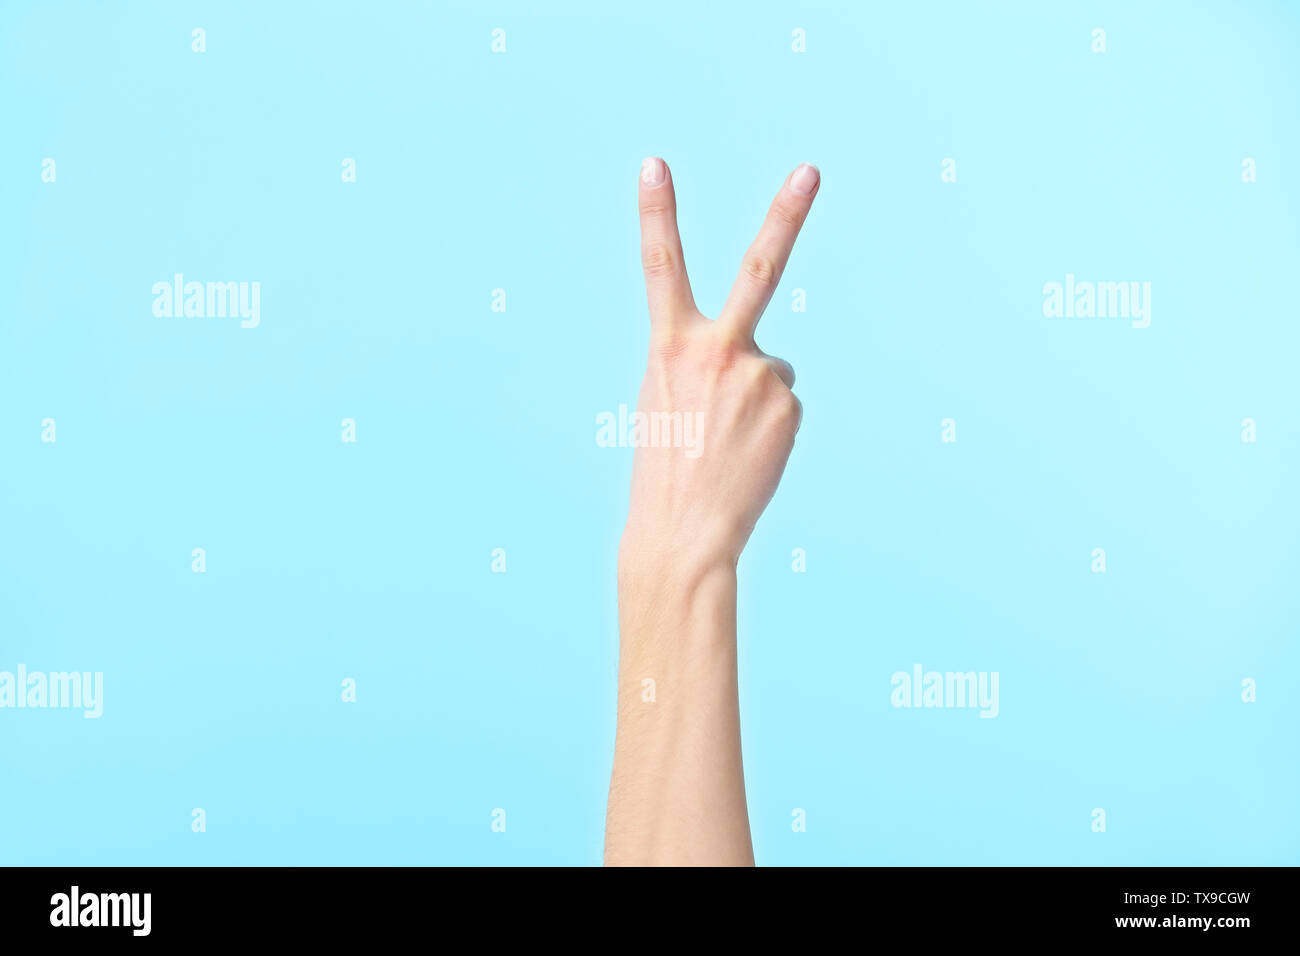 La mano humana mostrando el número dos, aislado sobre fondo azul. Foto de stock